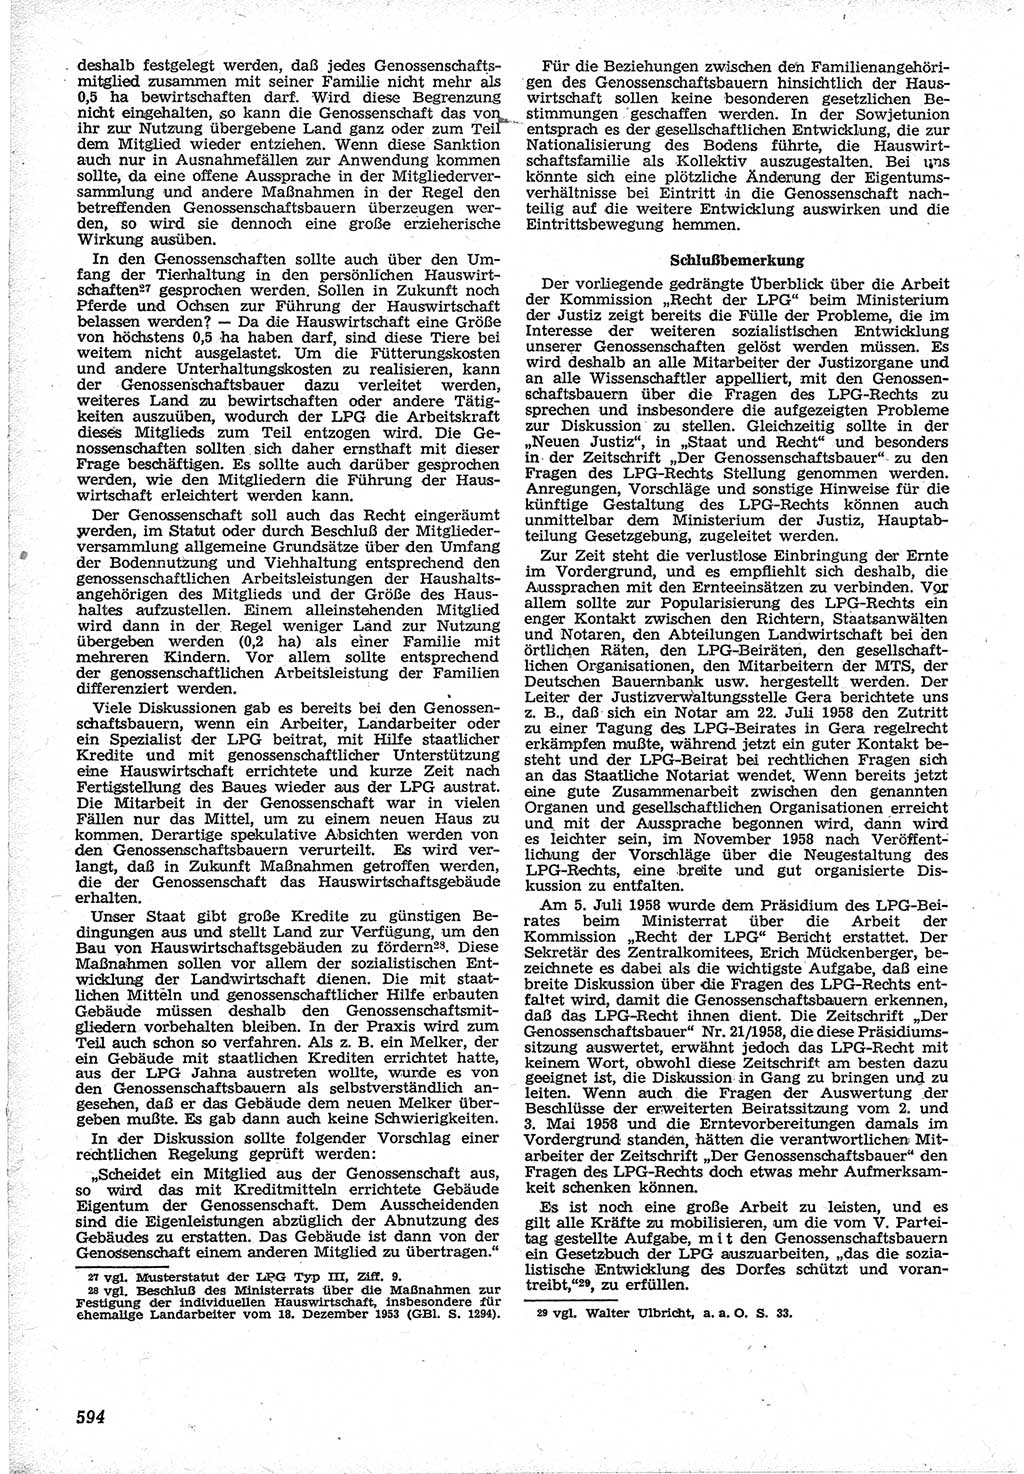 Neue Justiz (NJ), Zeitschrift für Recht und Rechtswissenschaft [Deutsche Demokratische Republik (DDR)], 12. Jahrgang 1958, Seite 594 (NJ DDR 1958, S. 594)